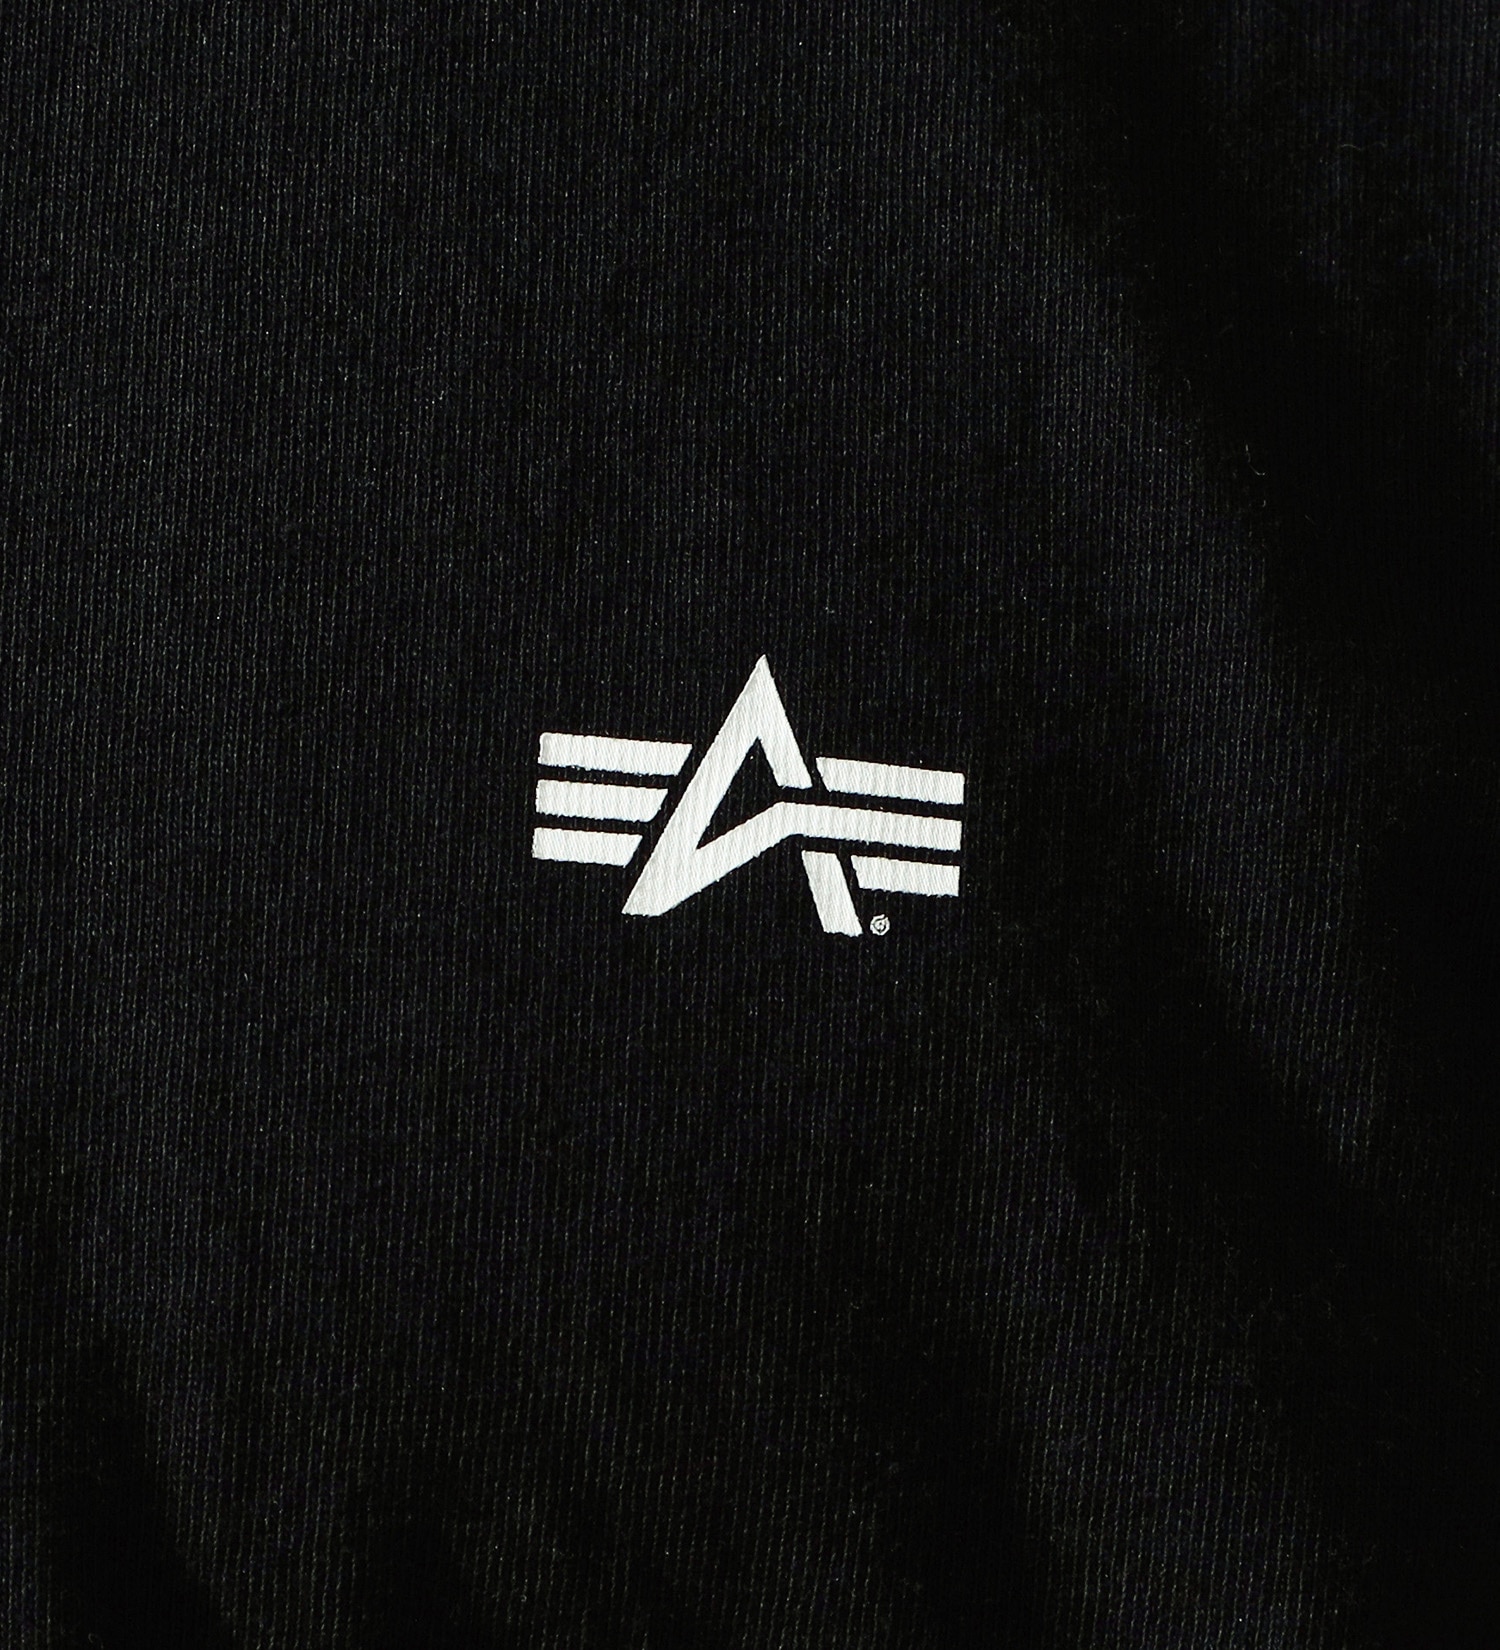 ALPHA(アルファ)のバックプリントBOXロゴTシャツ 半袖|トップス/Tシャツ/カットソー/メンズ|ブラック